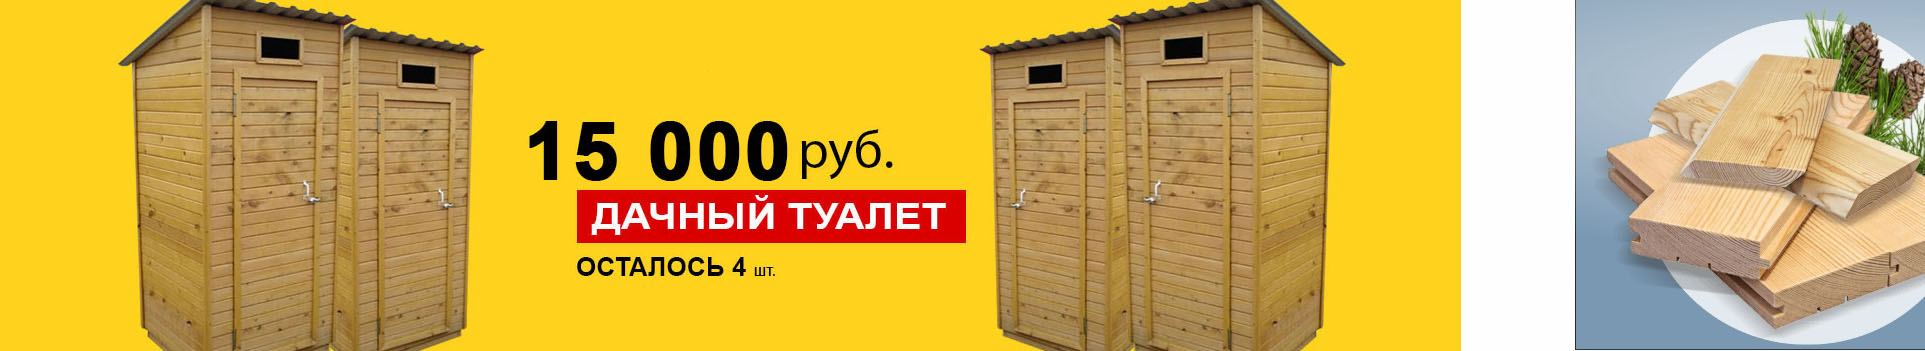 Дачный туалет 15000 руб